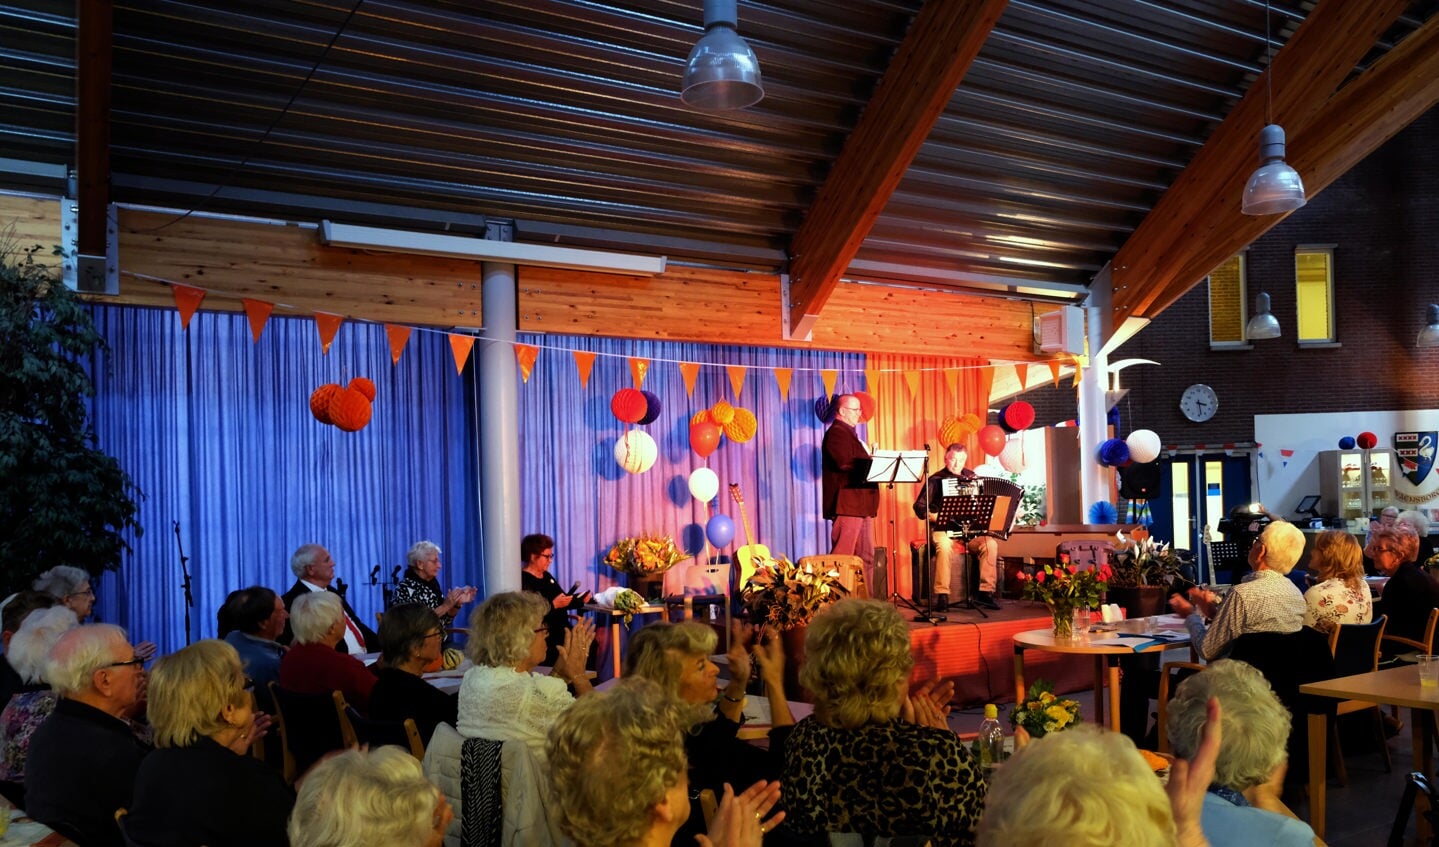 Bekijk meer foto's van het Senioren songfestival Waterland op www.rodi.nl. Ga naar regio Waterland. (Foto: Ria Houweling-Bouwman) 